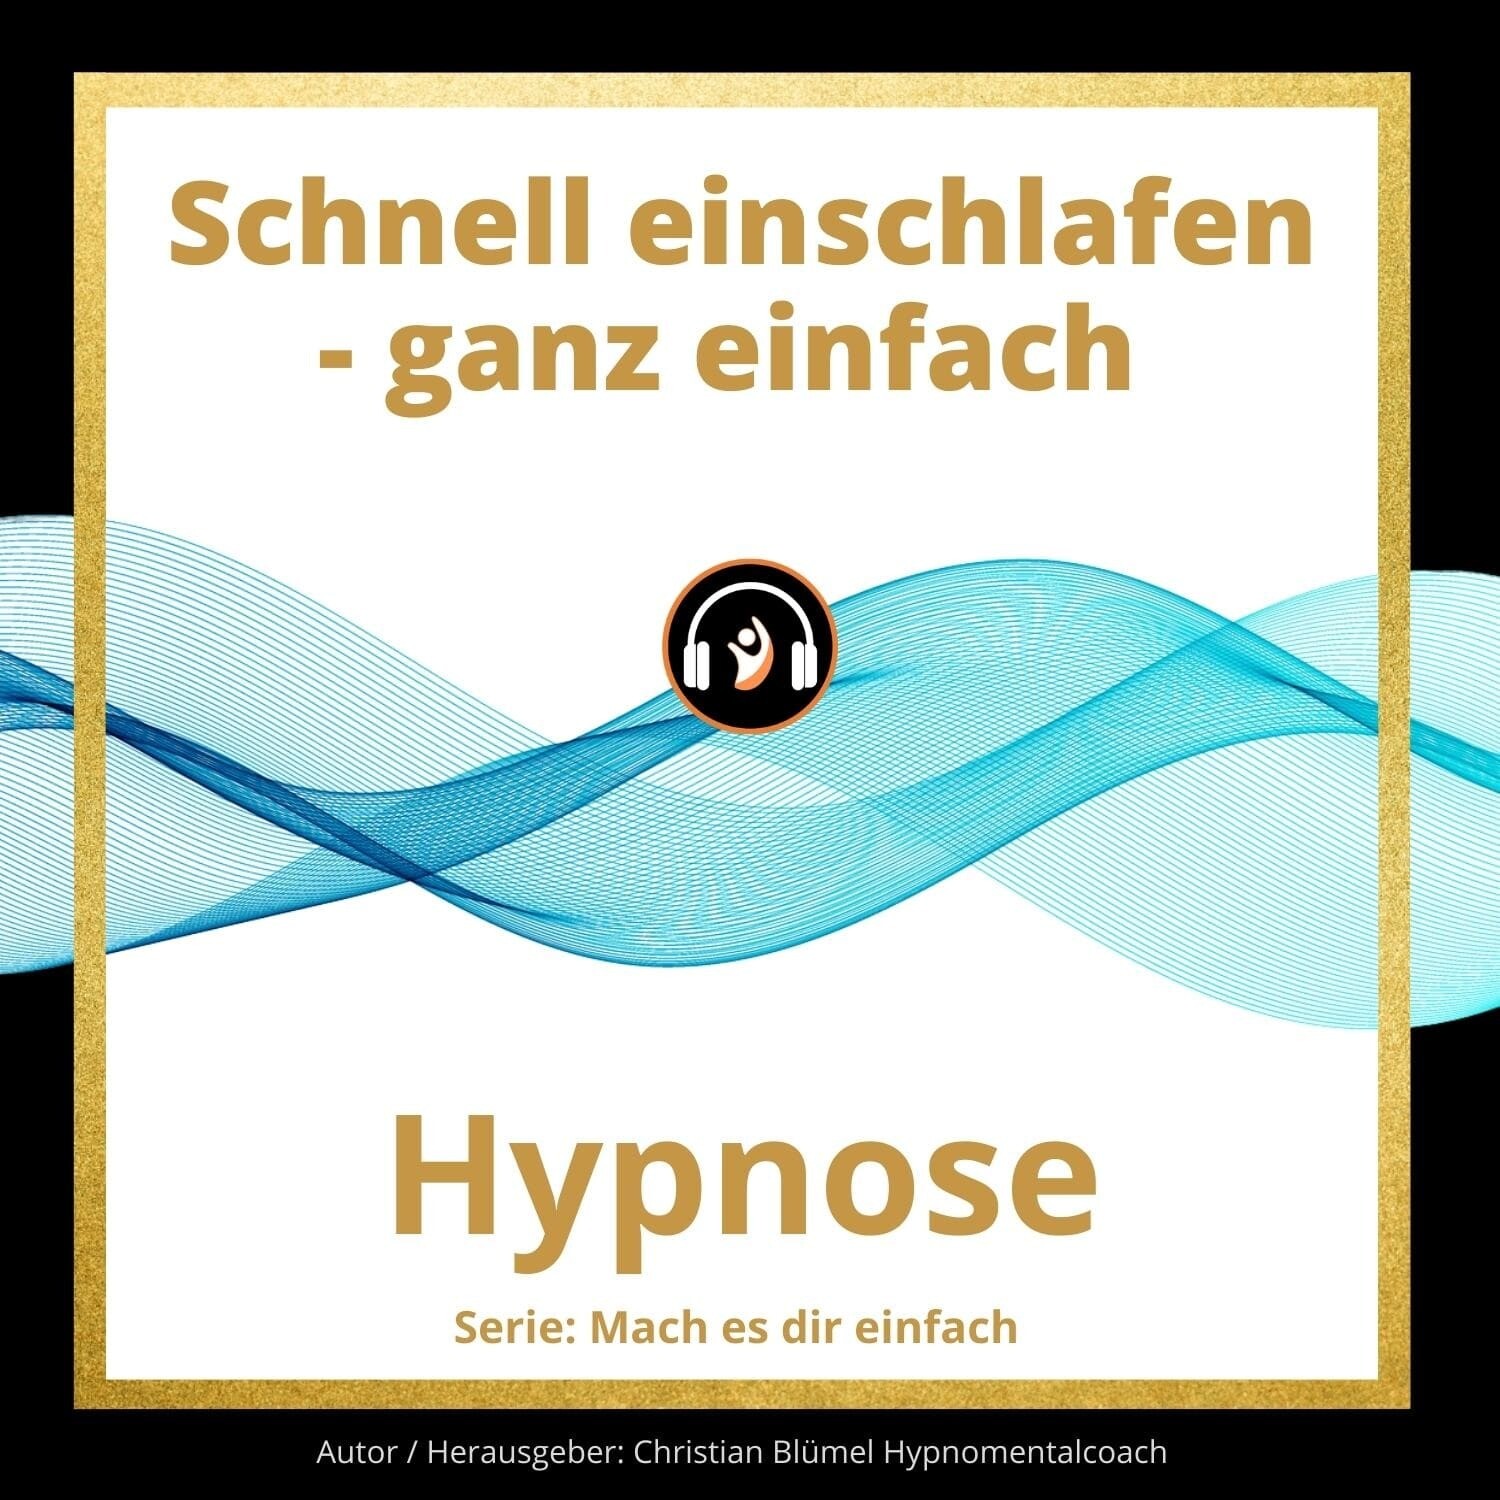 Audio Hypnose: Schnell einschlafen - ganz einfach